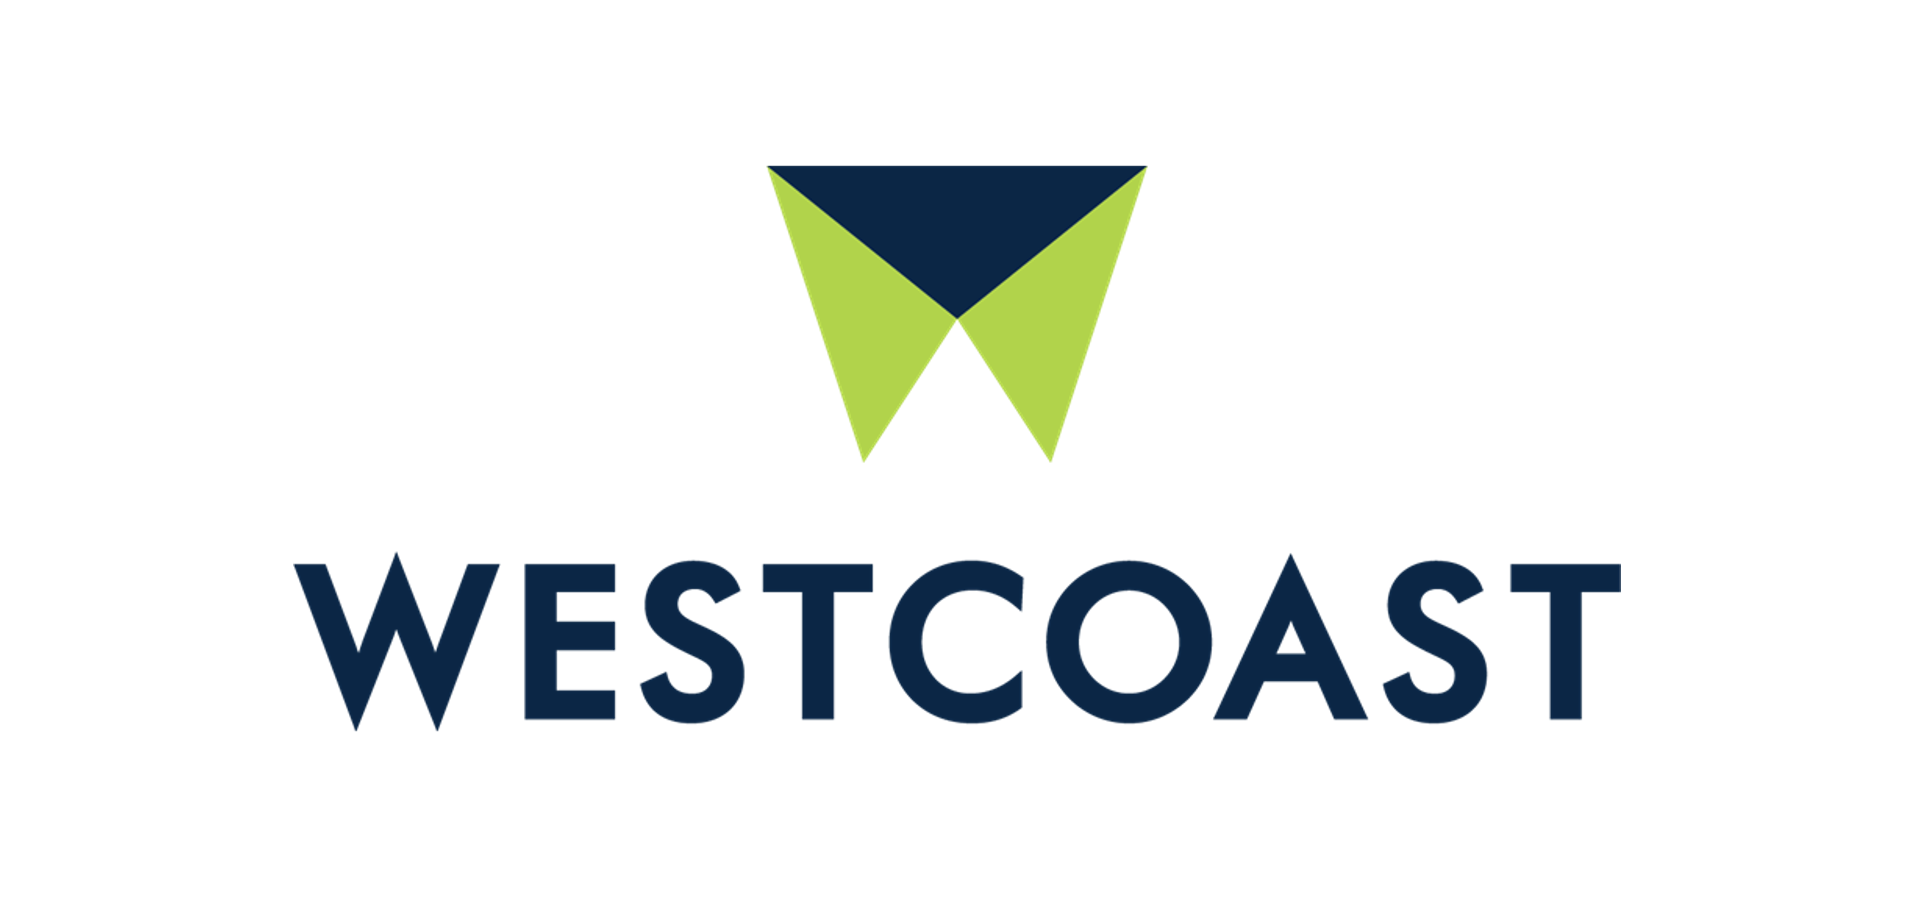 Westcoast - Roundtable Agency